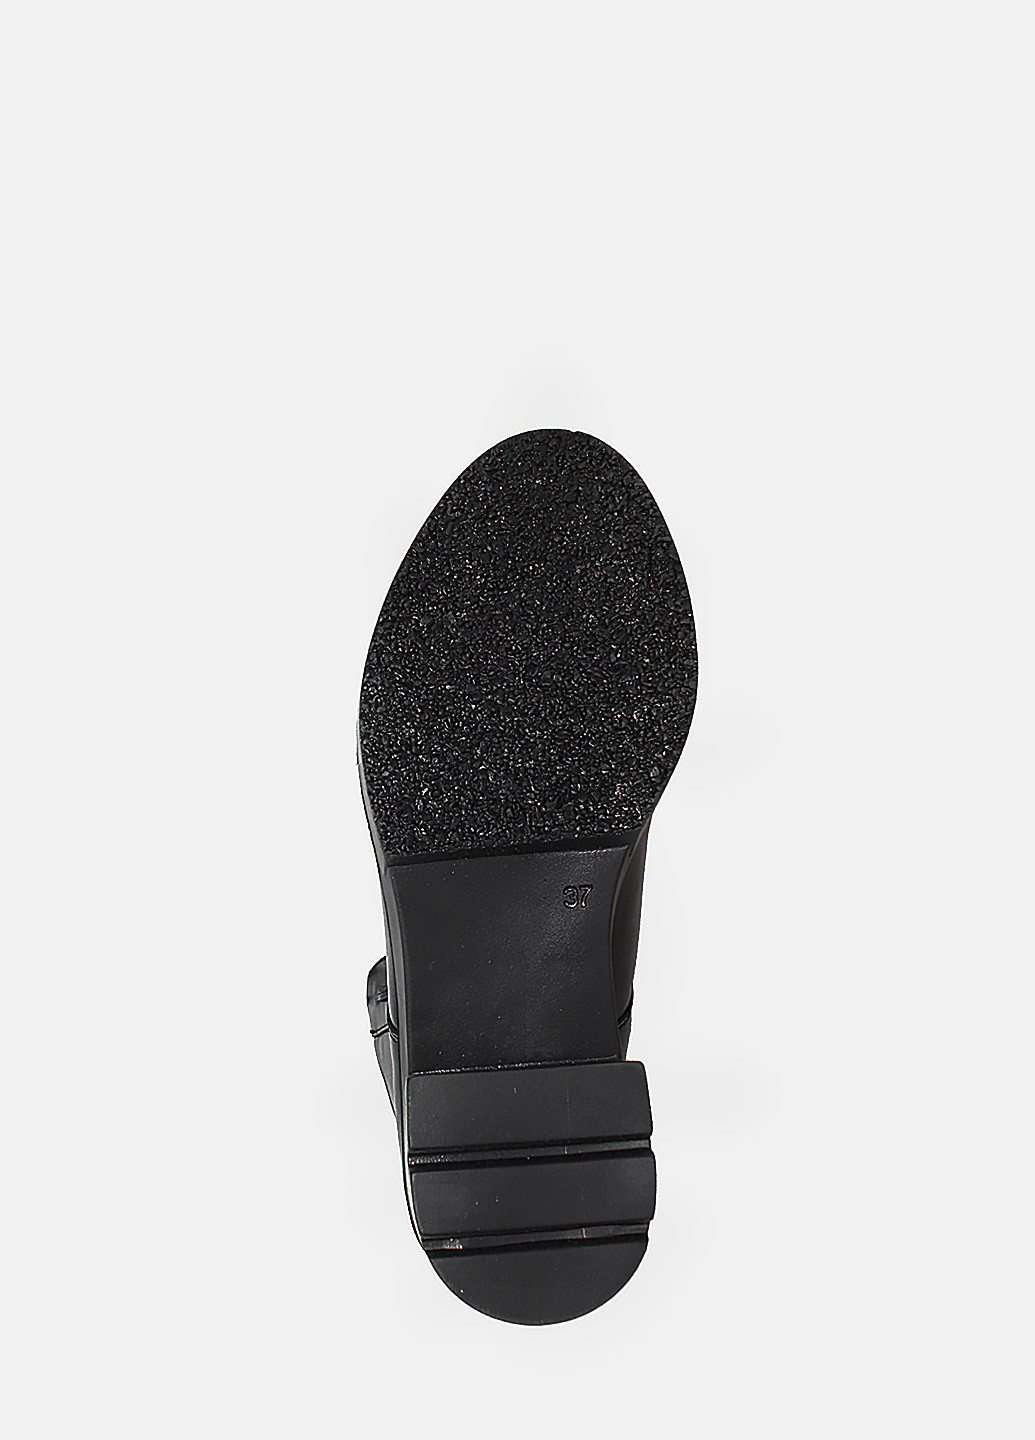 Зимние ботинки rp7162 черный Passati